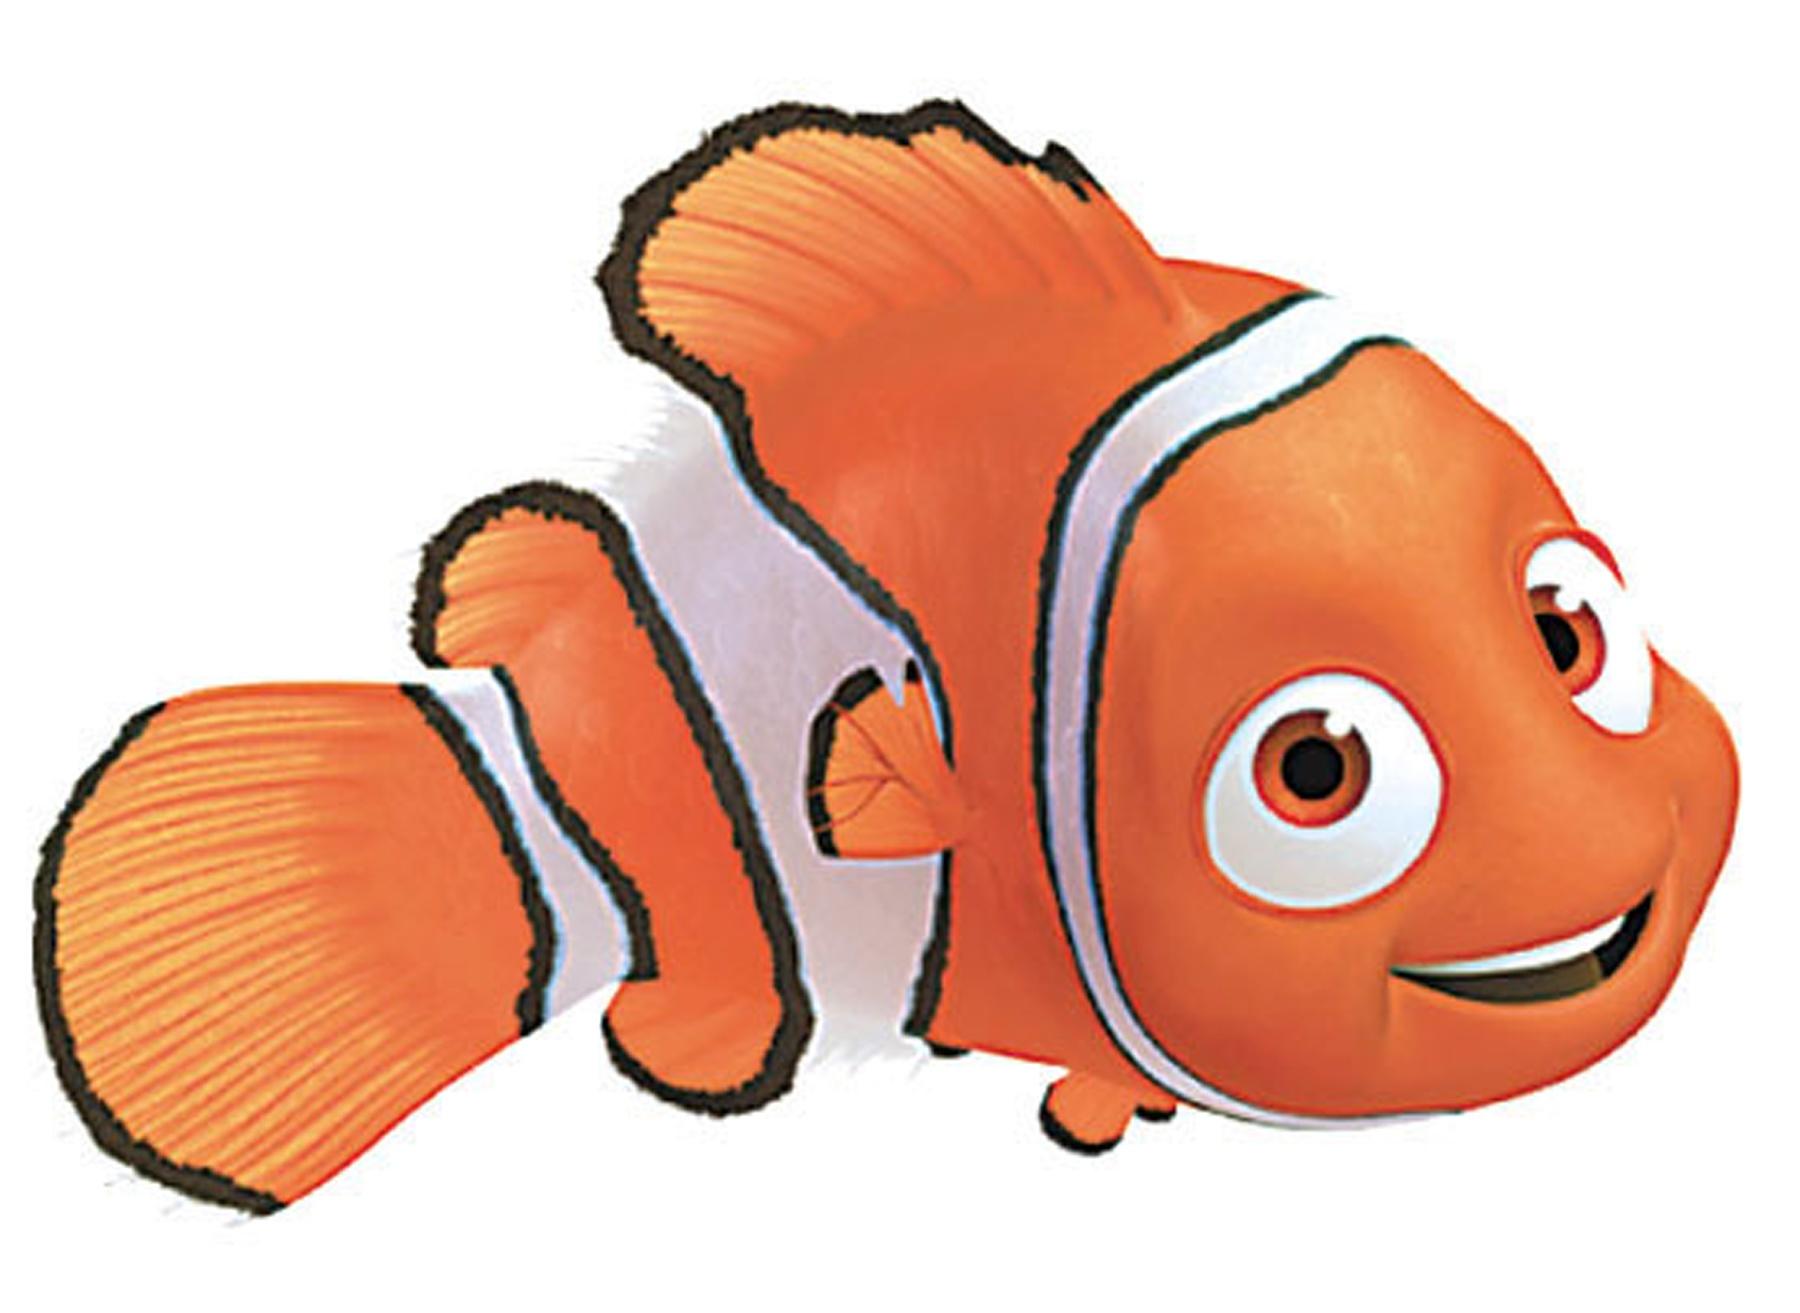 Nemo Clipart Free | Clipart P